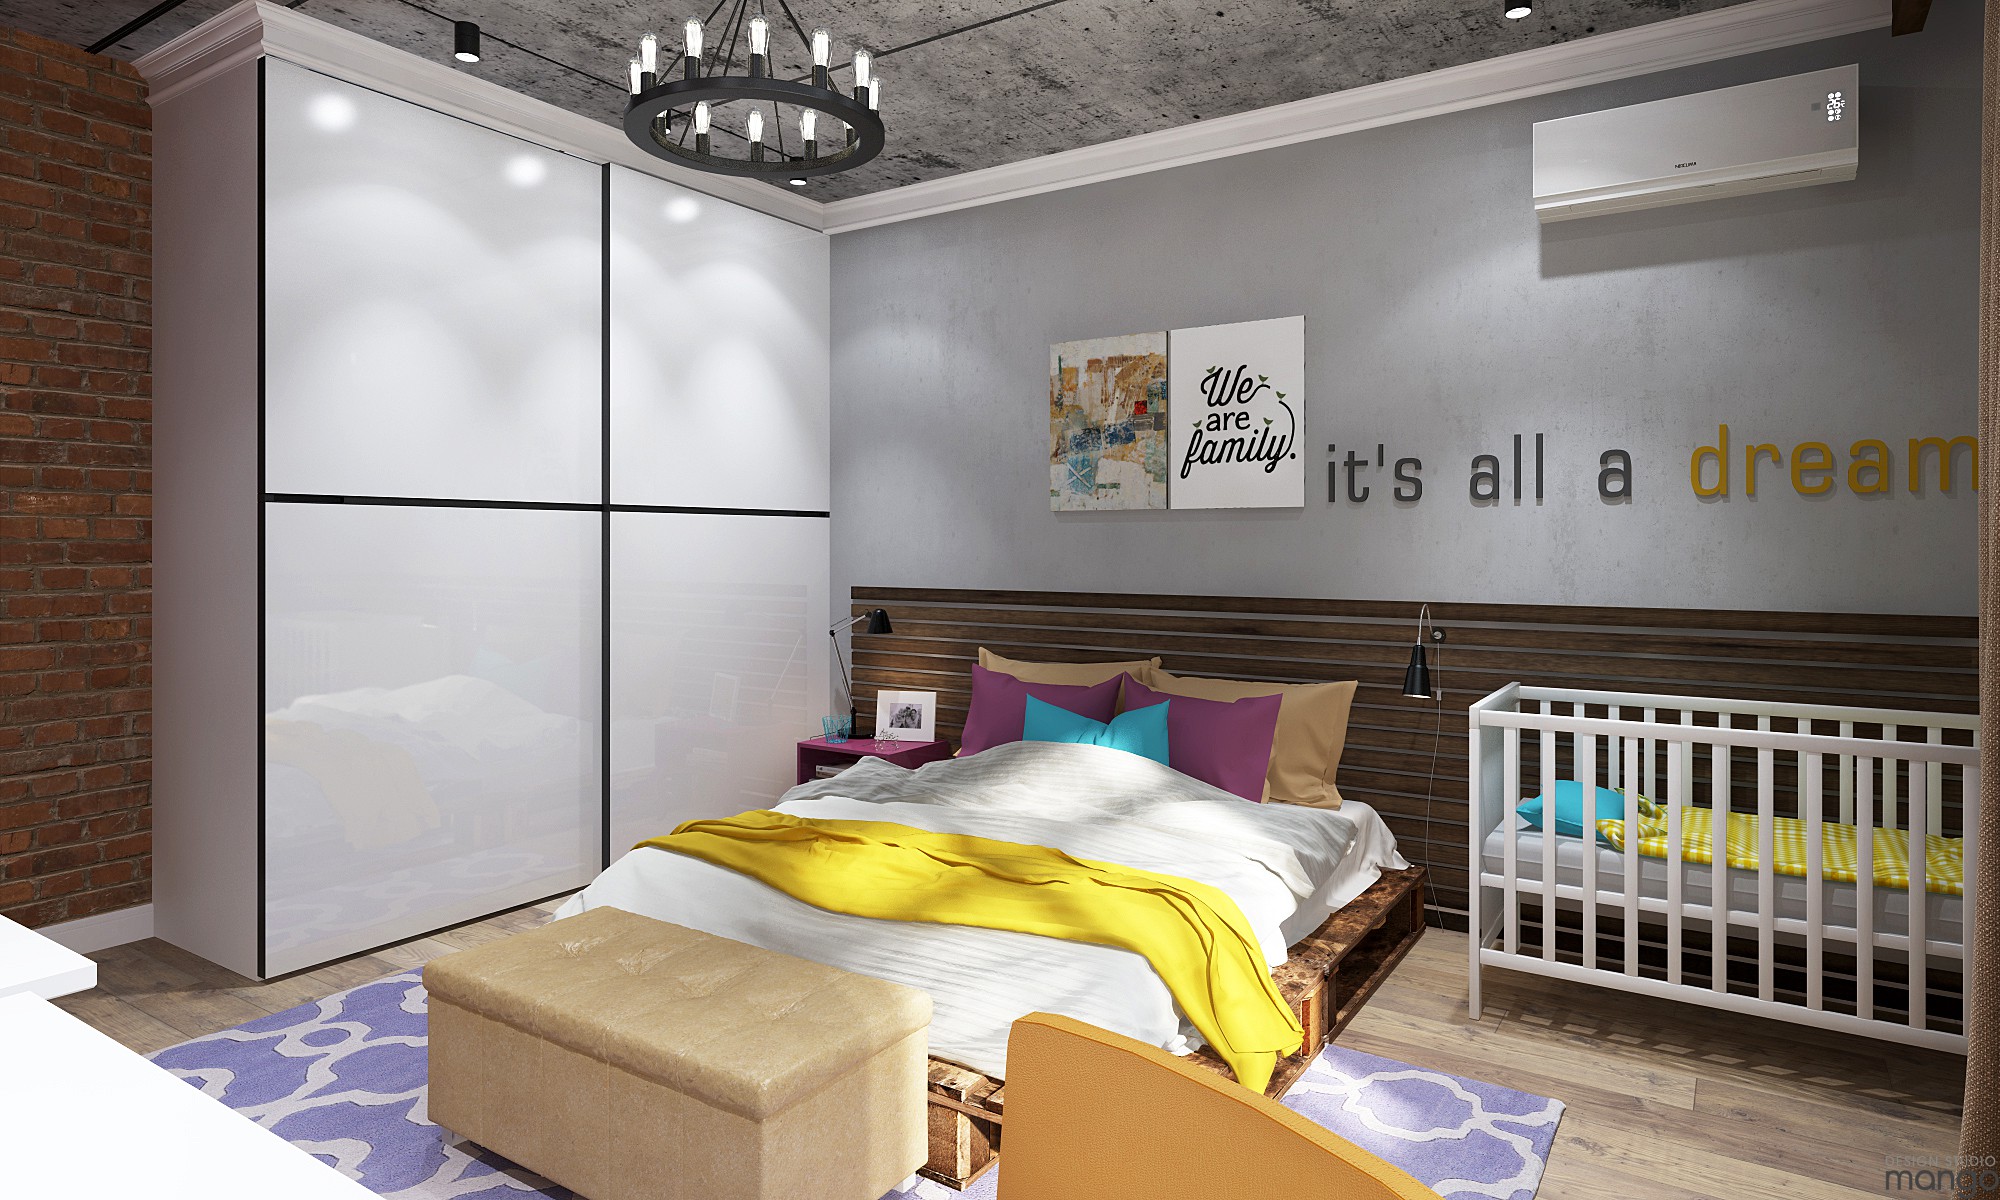 Modern bedroom interior design "width =" 2000 "height =" 1200 "srcset =" https://mileray.com/wp-content/uploads/2020/05/1588508973_132_How-To-Arrange-Interior-Bedroom-Designs-With-Stunning-Decor-That.jpg 2000w, https: / /mileray.com/wp-content/uploads/2016/10/Design-Studio-Mango2-7-300x180.jpg 300w, https://mileray.com/wp-content/uploads/2016/10/Design-Studio- Mango2-7-768x461.jpg 768w, https://mileray.com/wp-content/uploads/2016/10/Design-Studio-Mango2-7-1024x614.jpg 1024w, https://mileray.com/wp- content / uploads / 2016/10 / Design-Studio-Mango2-7-696x418.jpg 696w, https://mileray.com/wp-content/uploads/2016/10/Design-Studio-Mango2-7-1068x641.jpg 1068w, https://mileray.com/wp-content/uploads/2016/10/Design-Studio-Mango2-7-700x420.jpg 700w "sizes =" (maximum width: 2000px) 100vw, 2000px